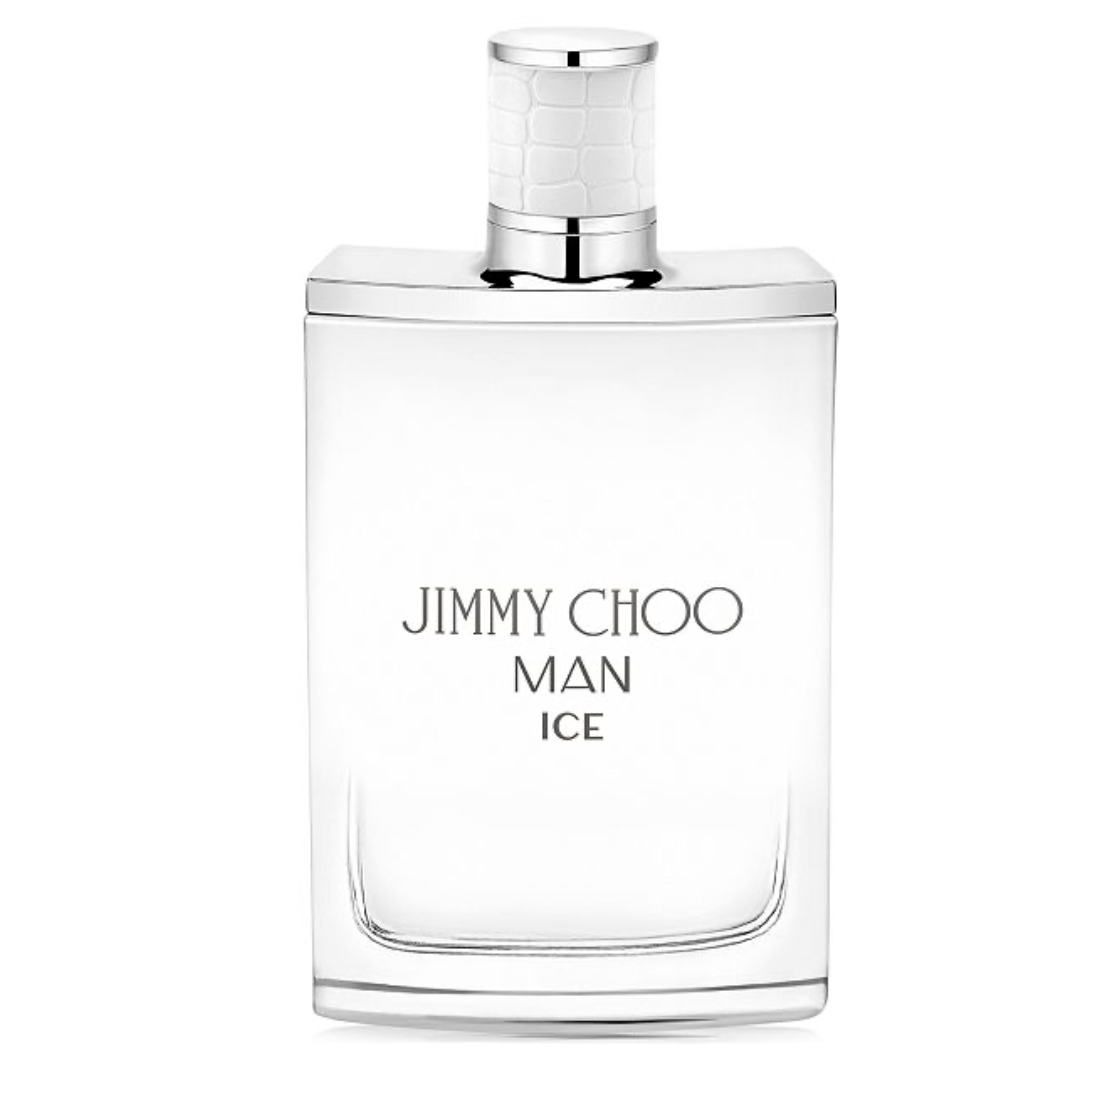 JIMMY CHOO - Man Ice Eau de Toilette, 3.3 oz